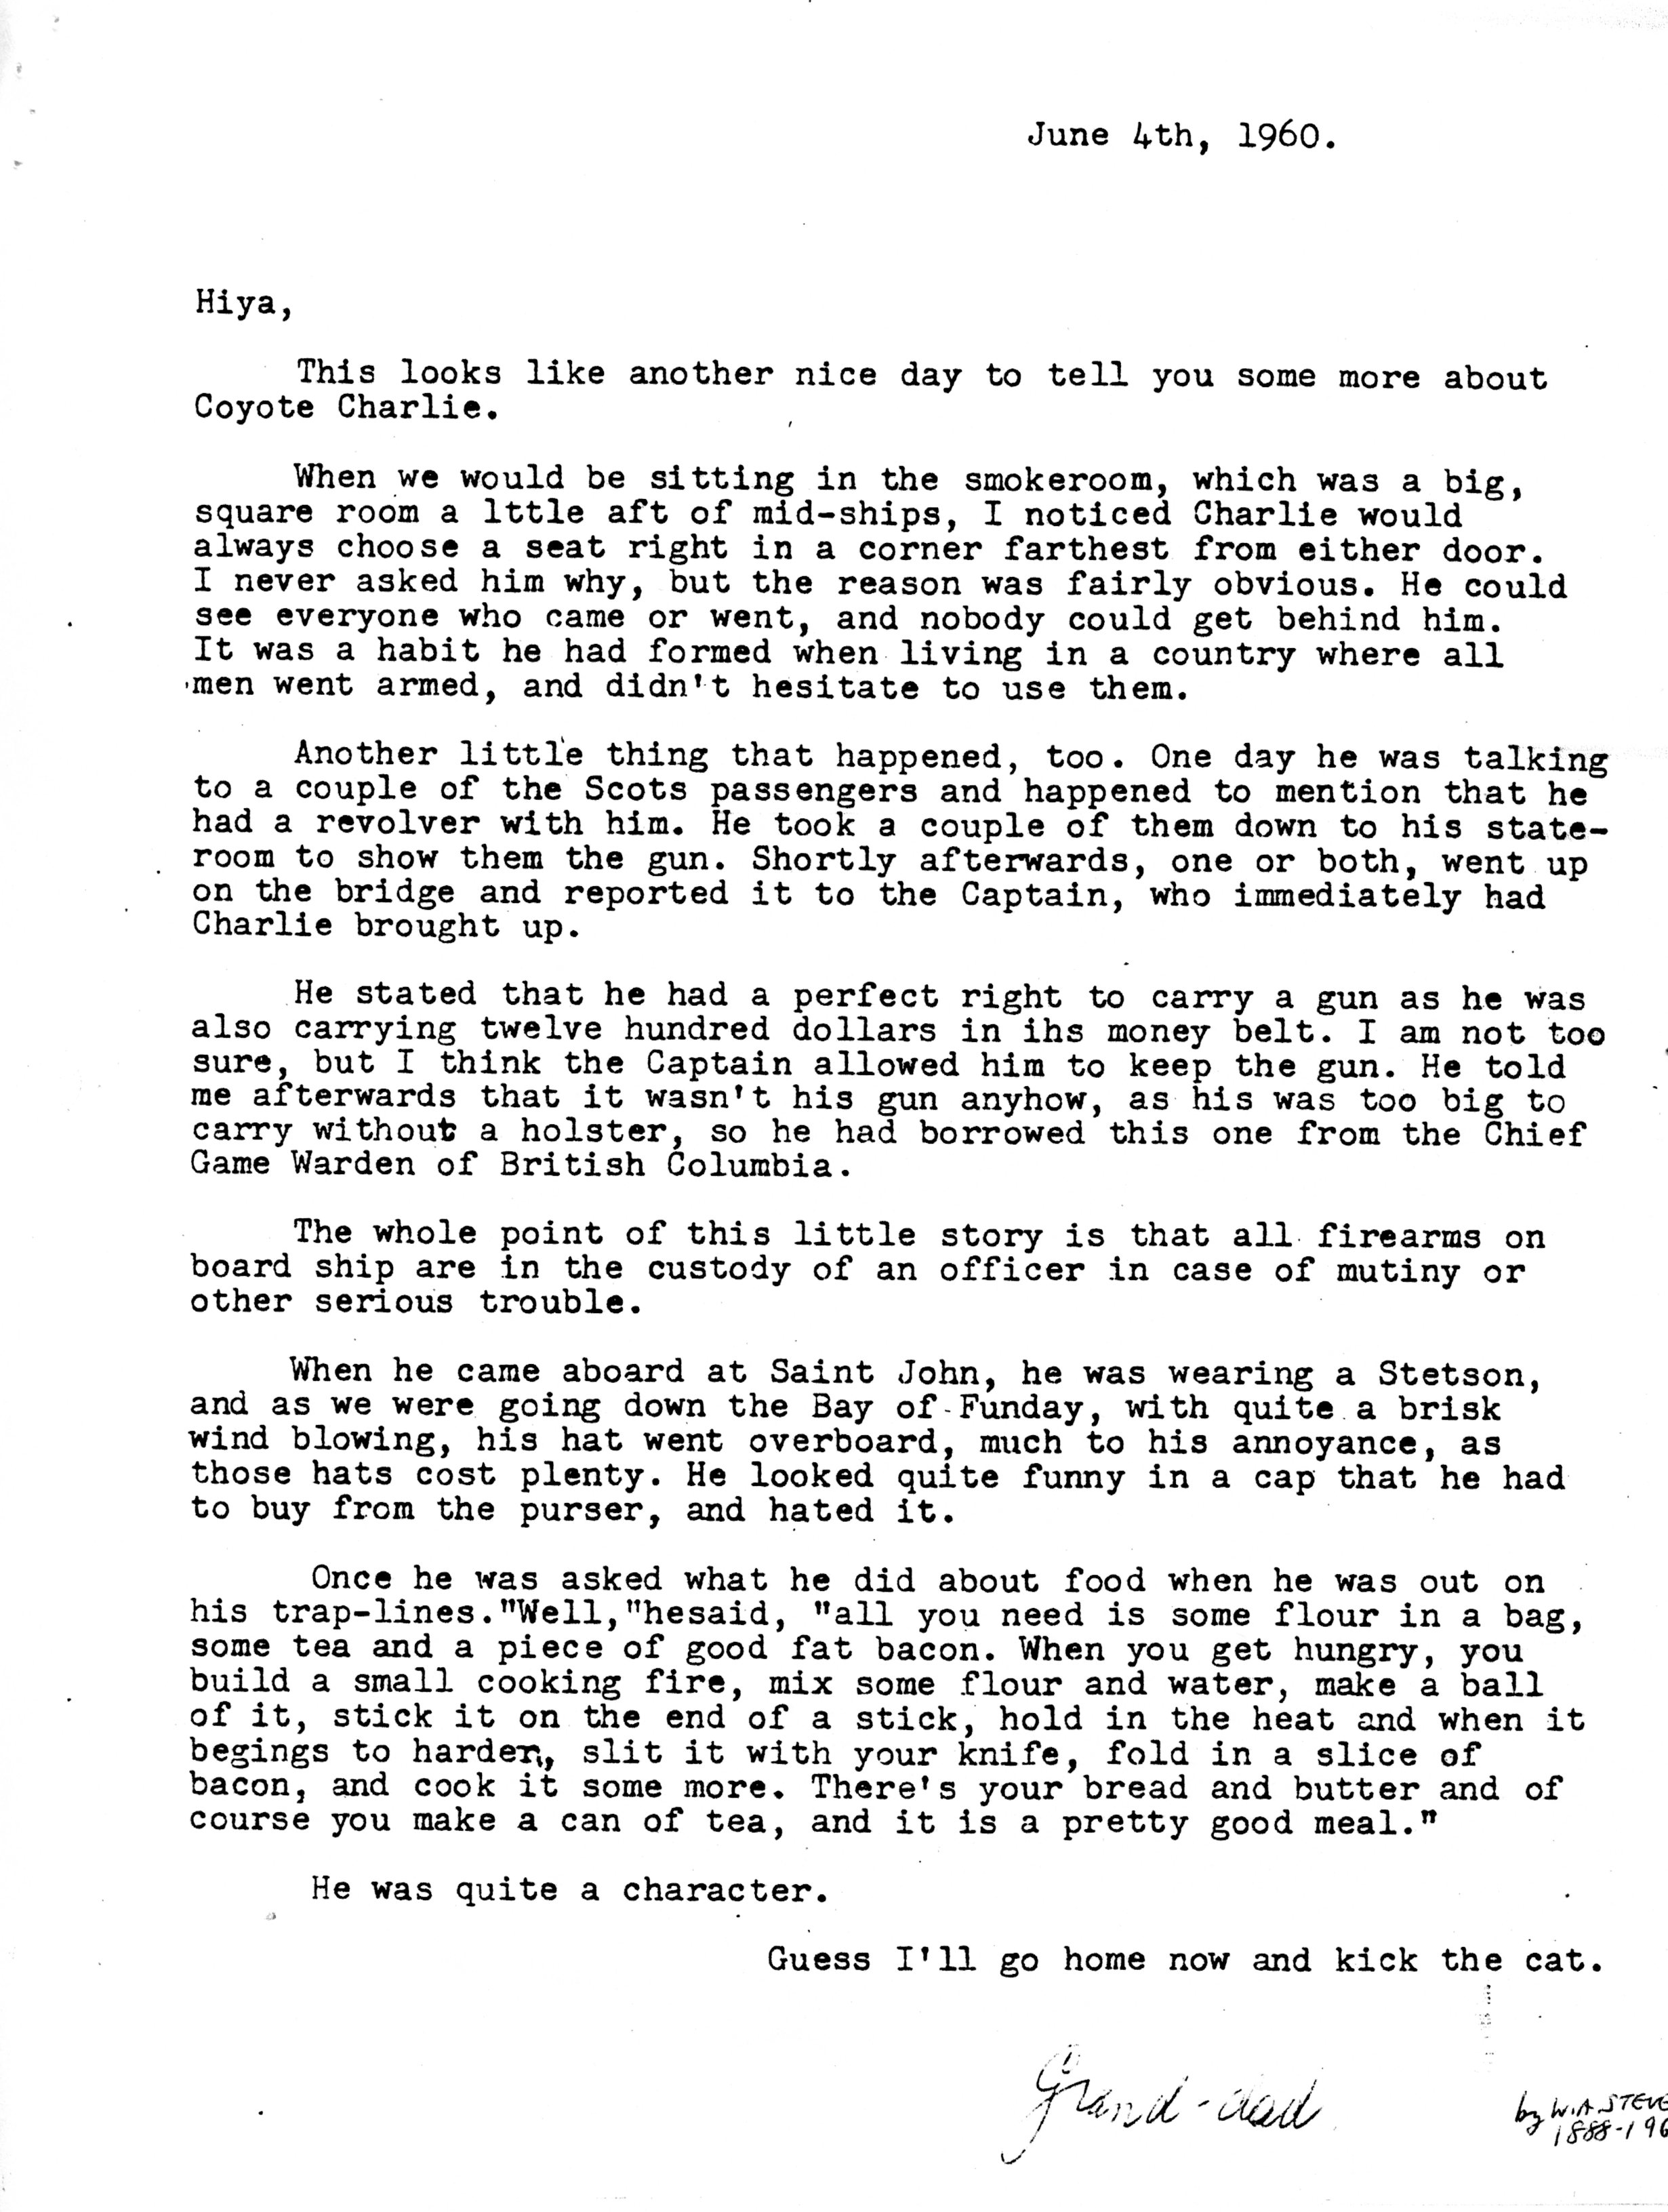 1960-06-04 Letters from Wm Arnott STEVENS